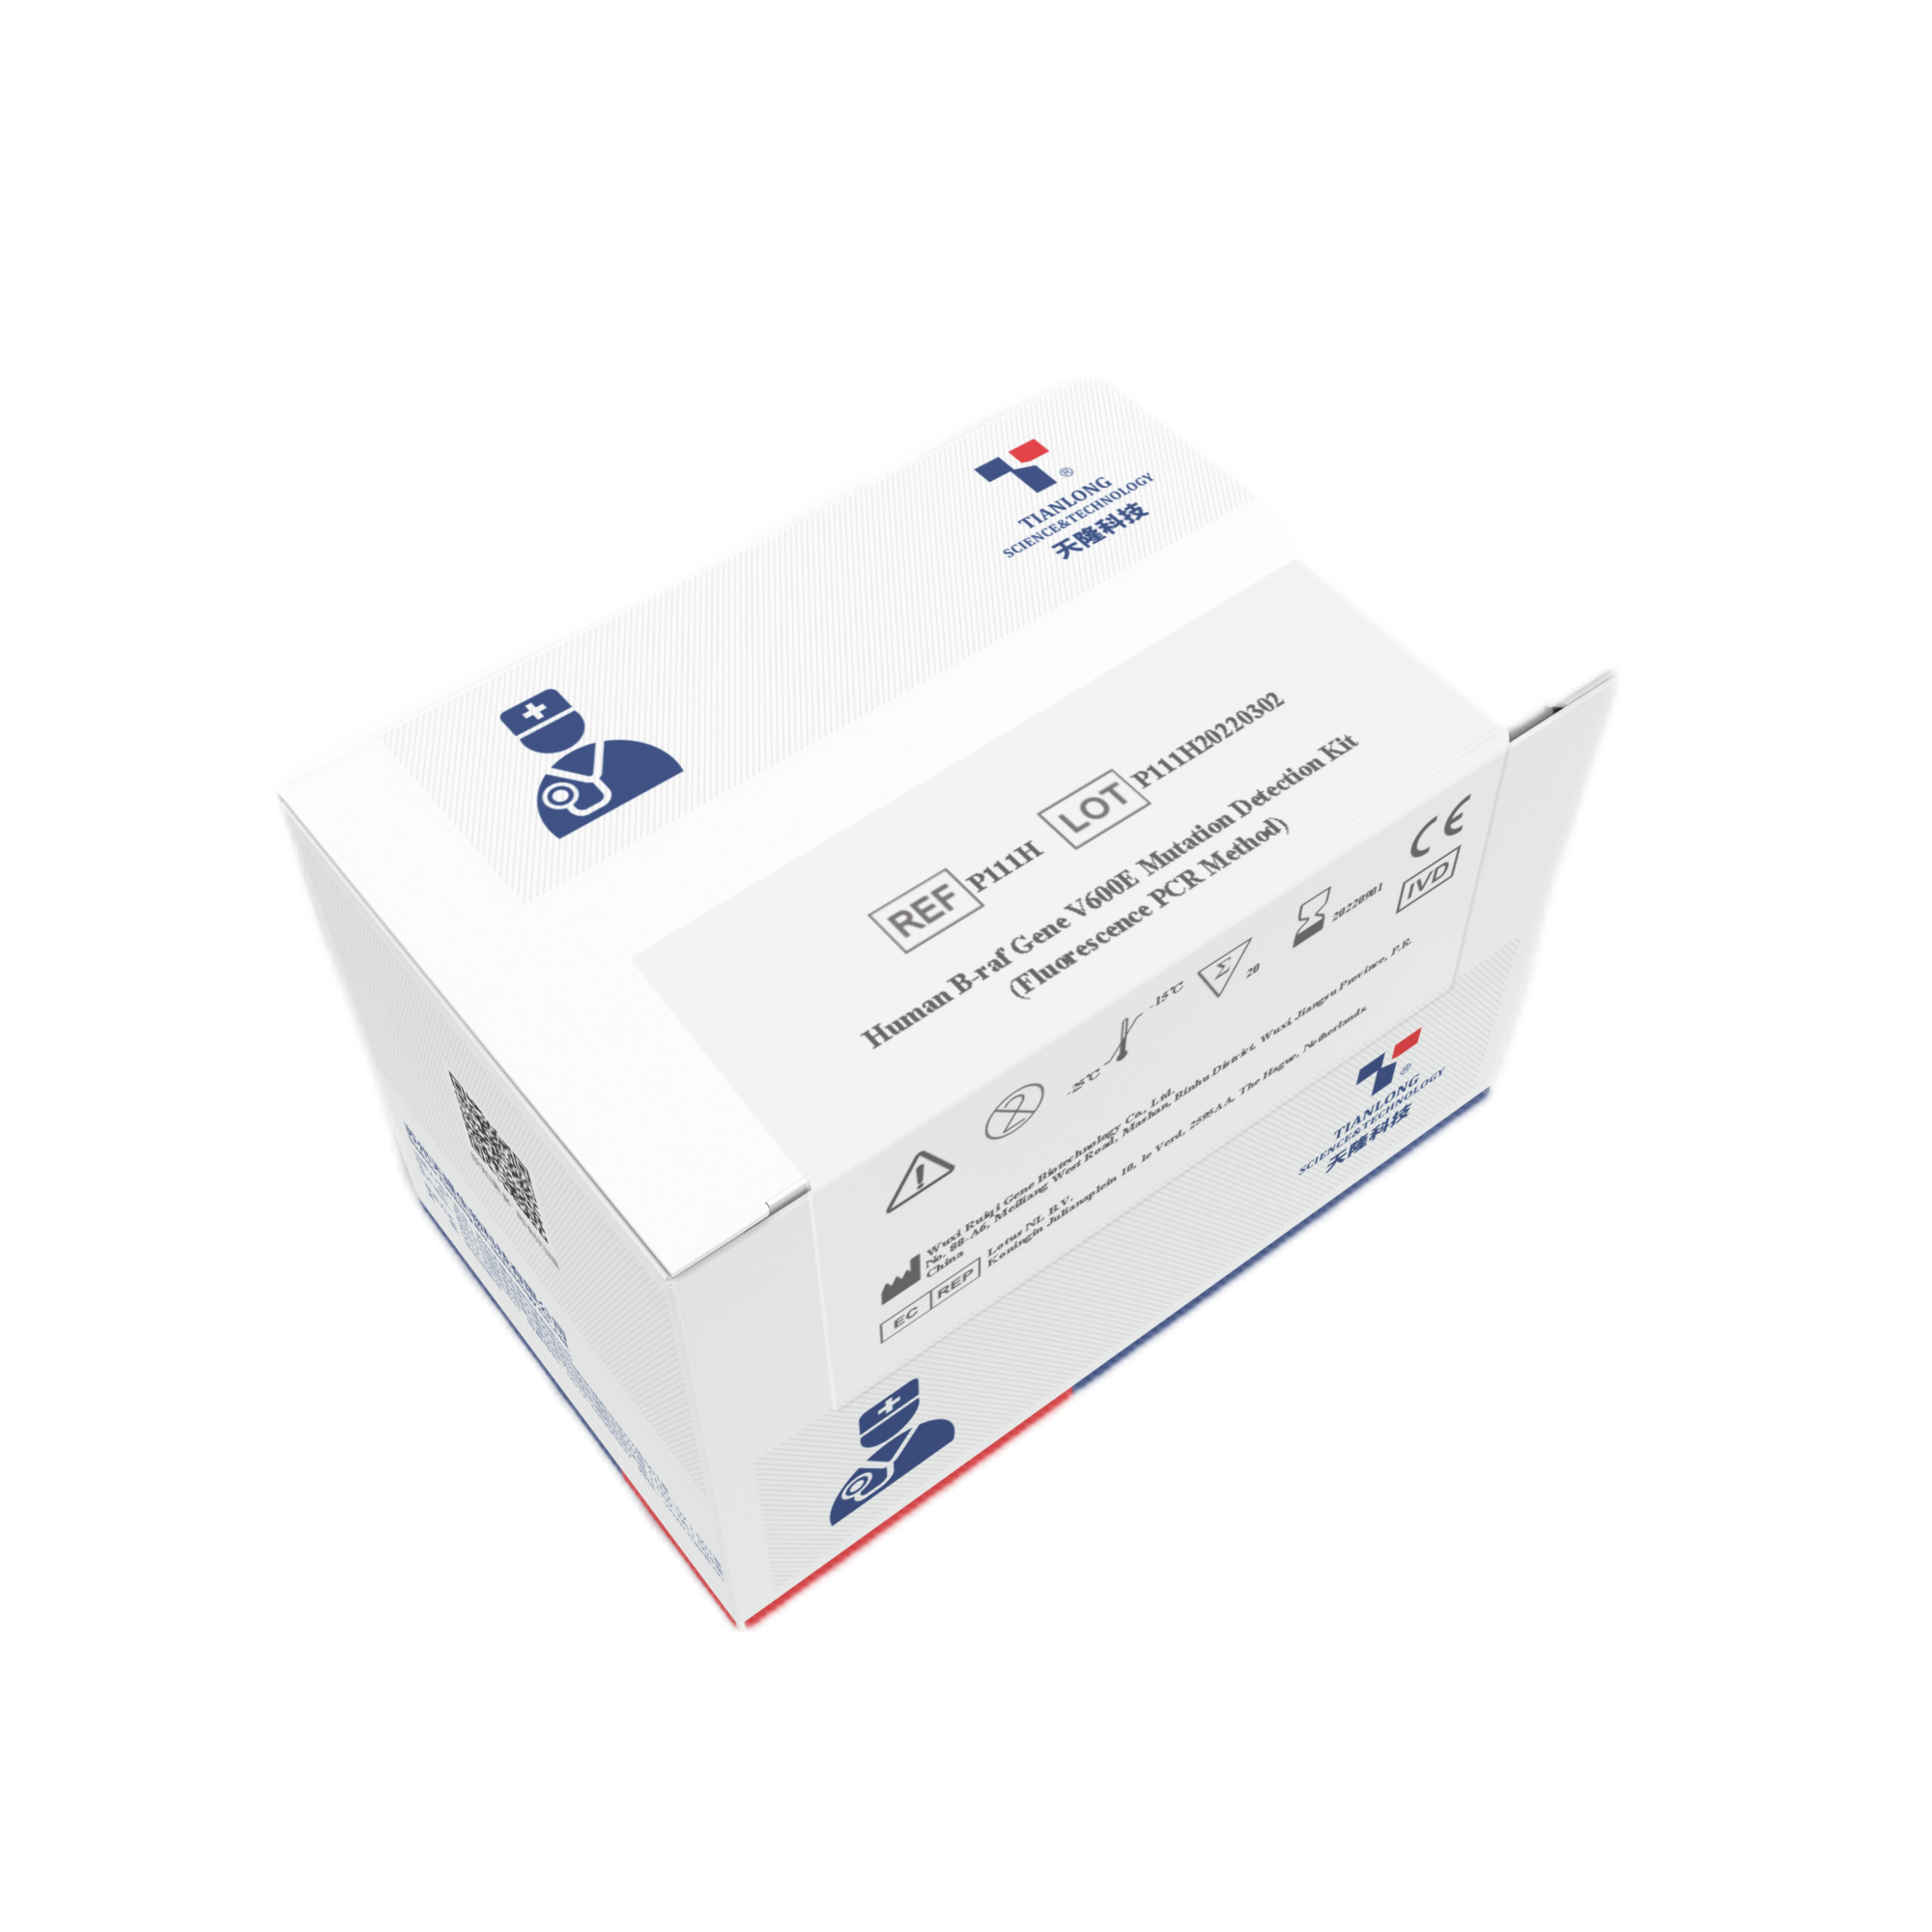 P739H - Kit de Detecção de Ácido Nucleico Influenza A/Influenza B/SARS-CoV-2